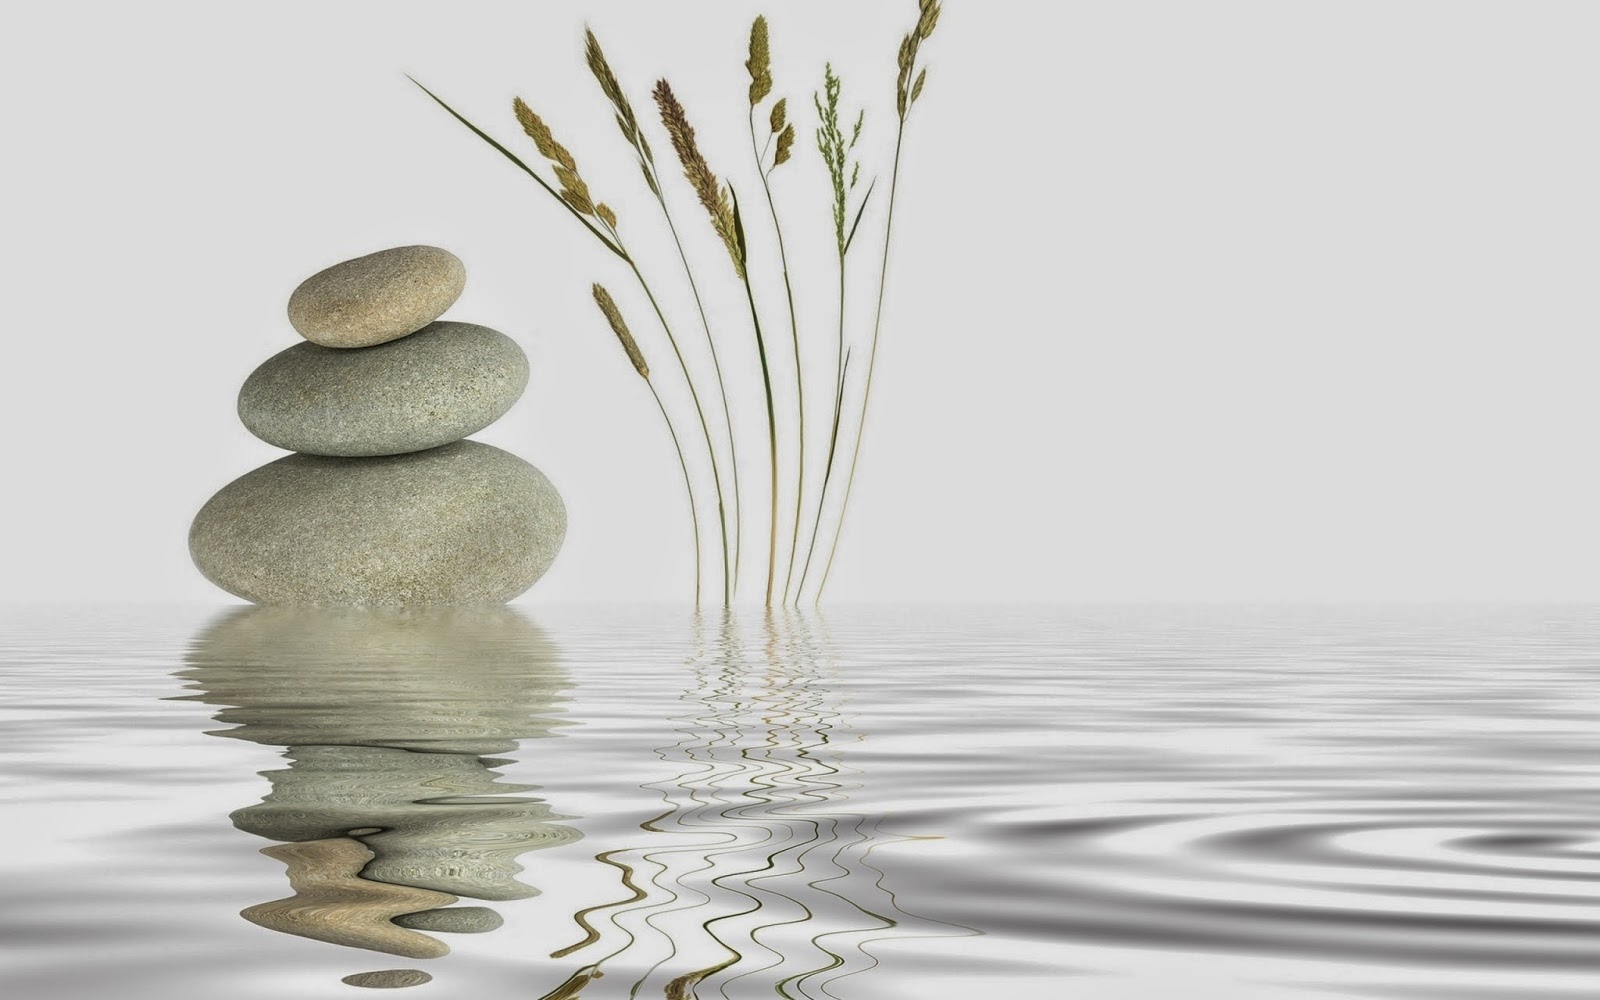 Zen Garden Sand Wallpaper White Stone With Water